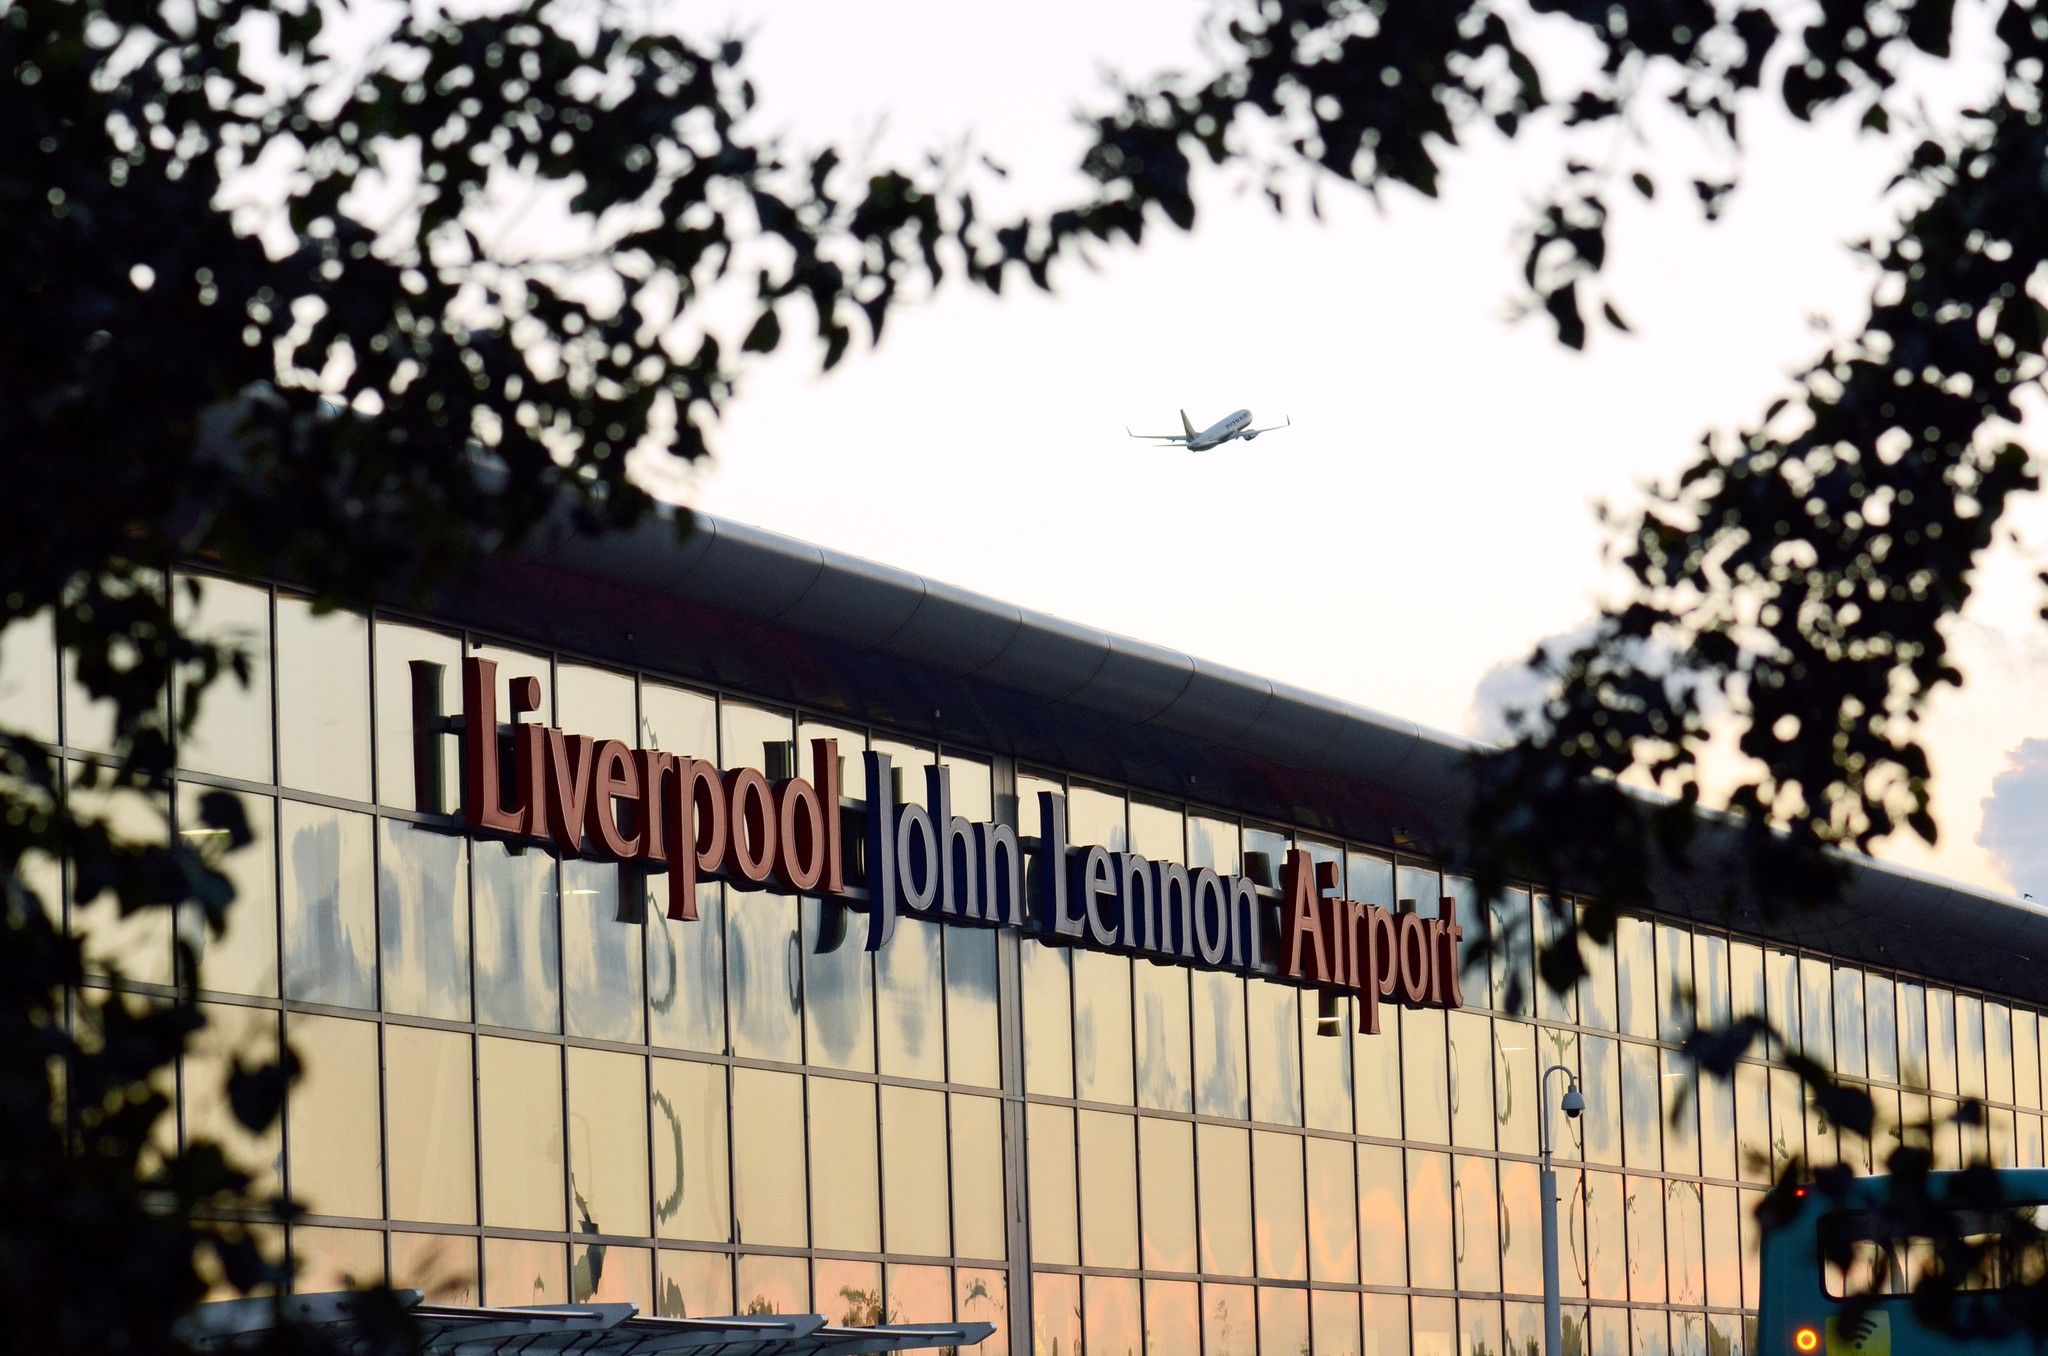 Ryanair plane over Liverpool John Lennon Airport